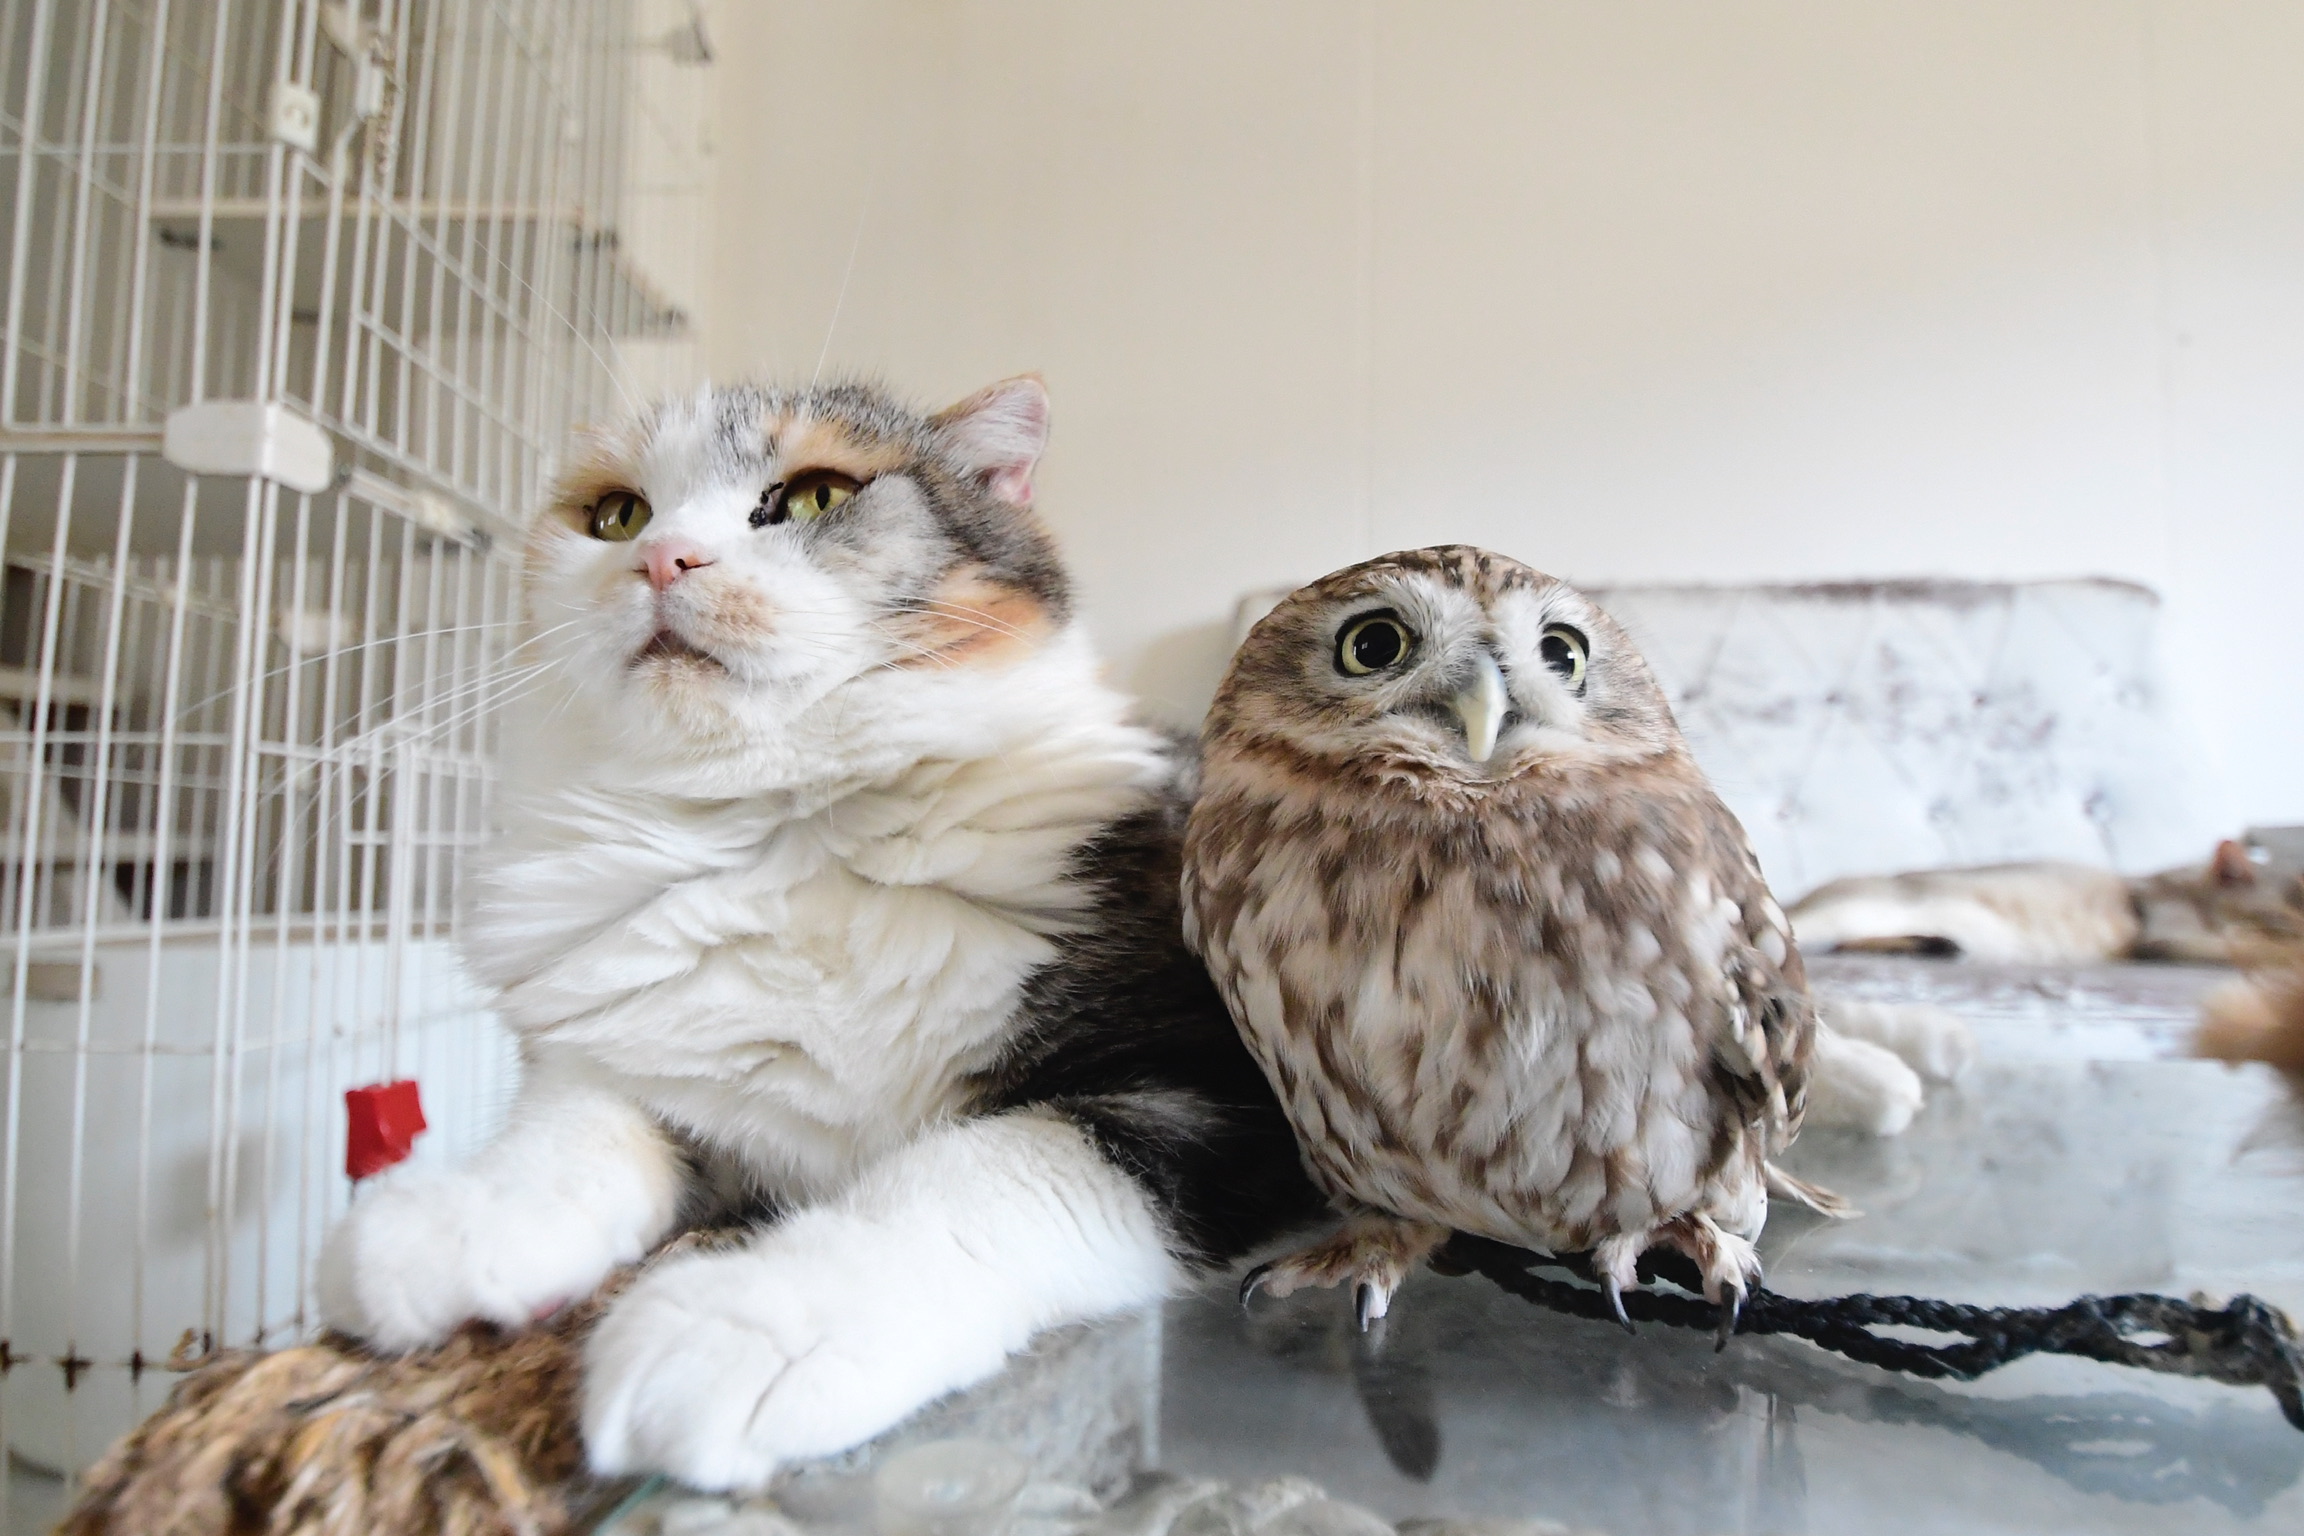 cat & owl photograph #11